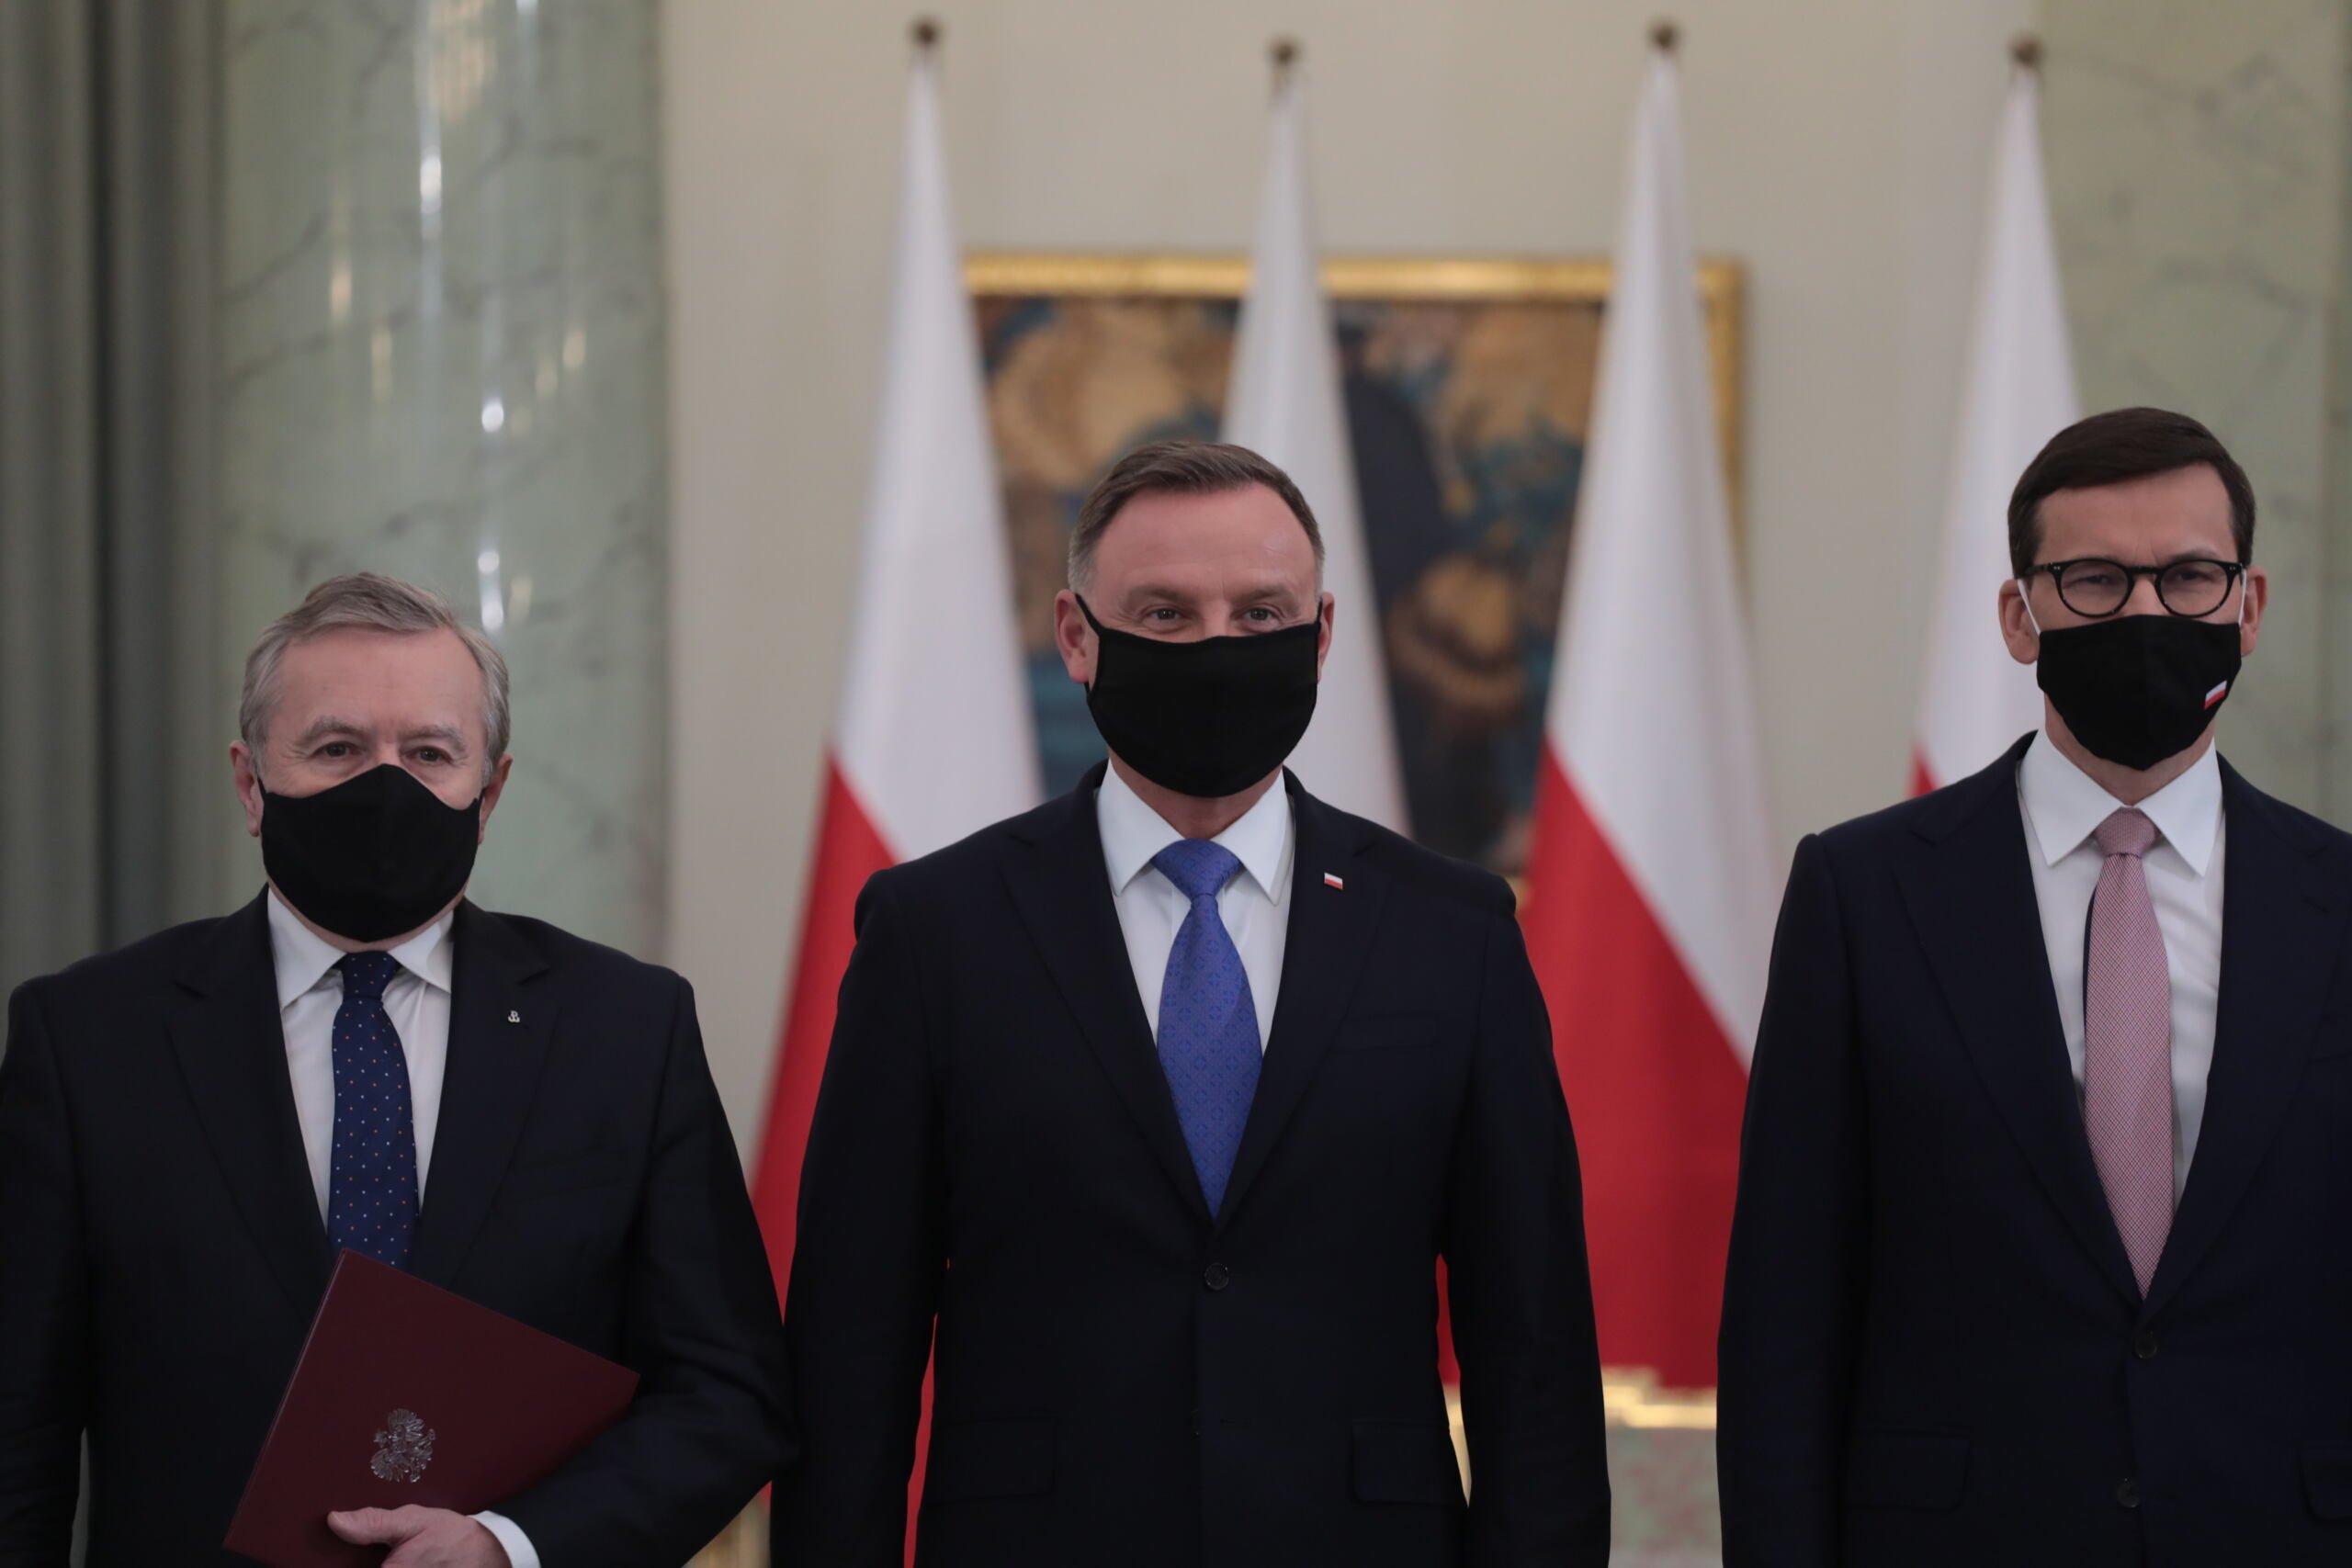 Piotr Gliński, Andrzej Duda i Mateusz Morawiecki na tle biało-czerwonych flag